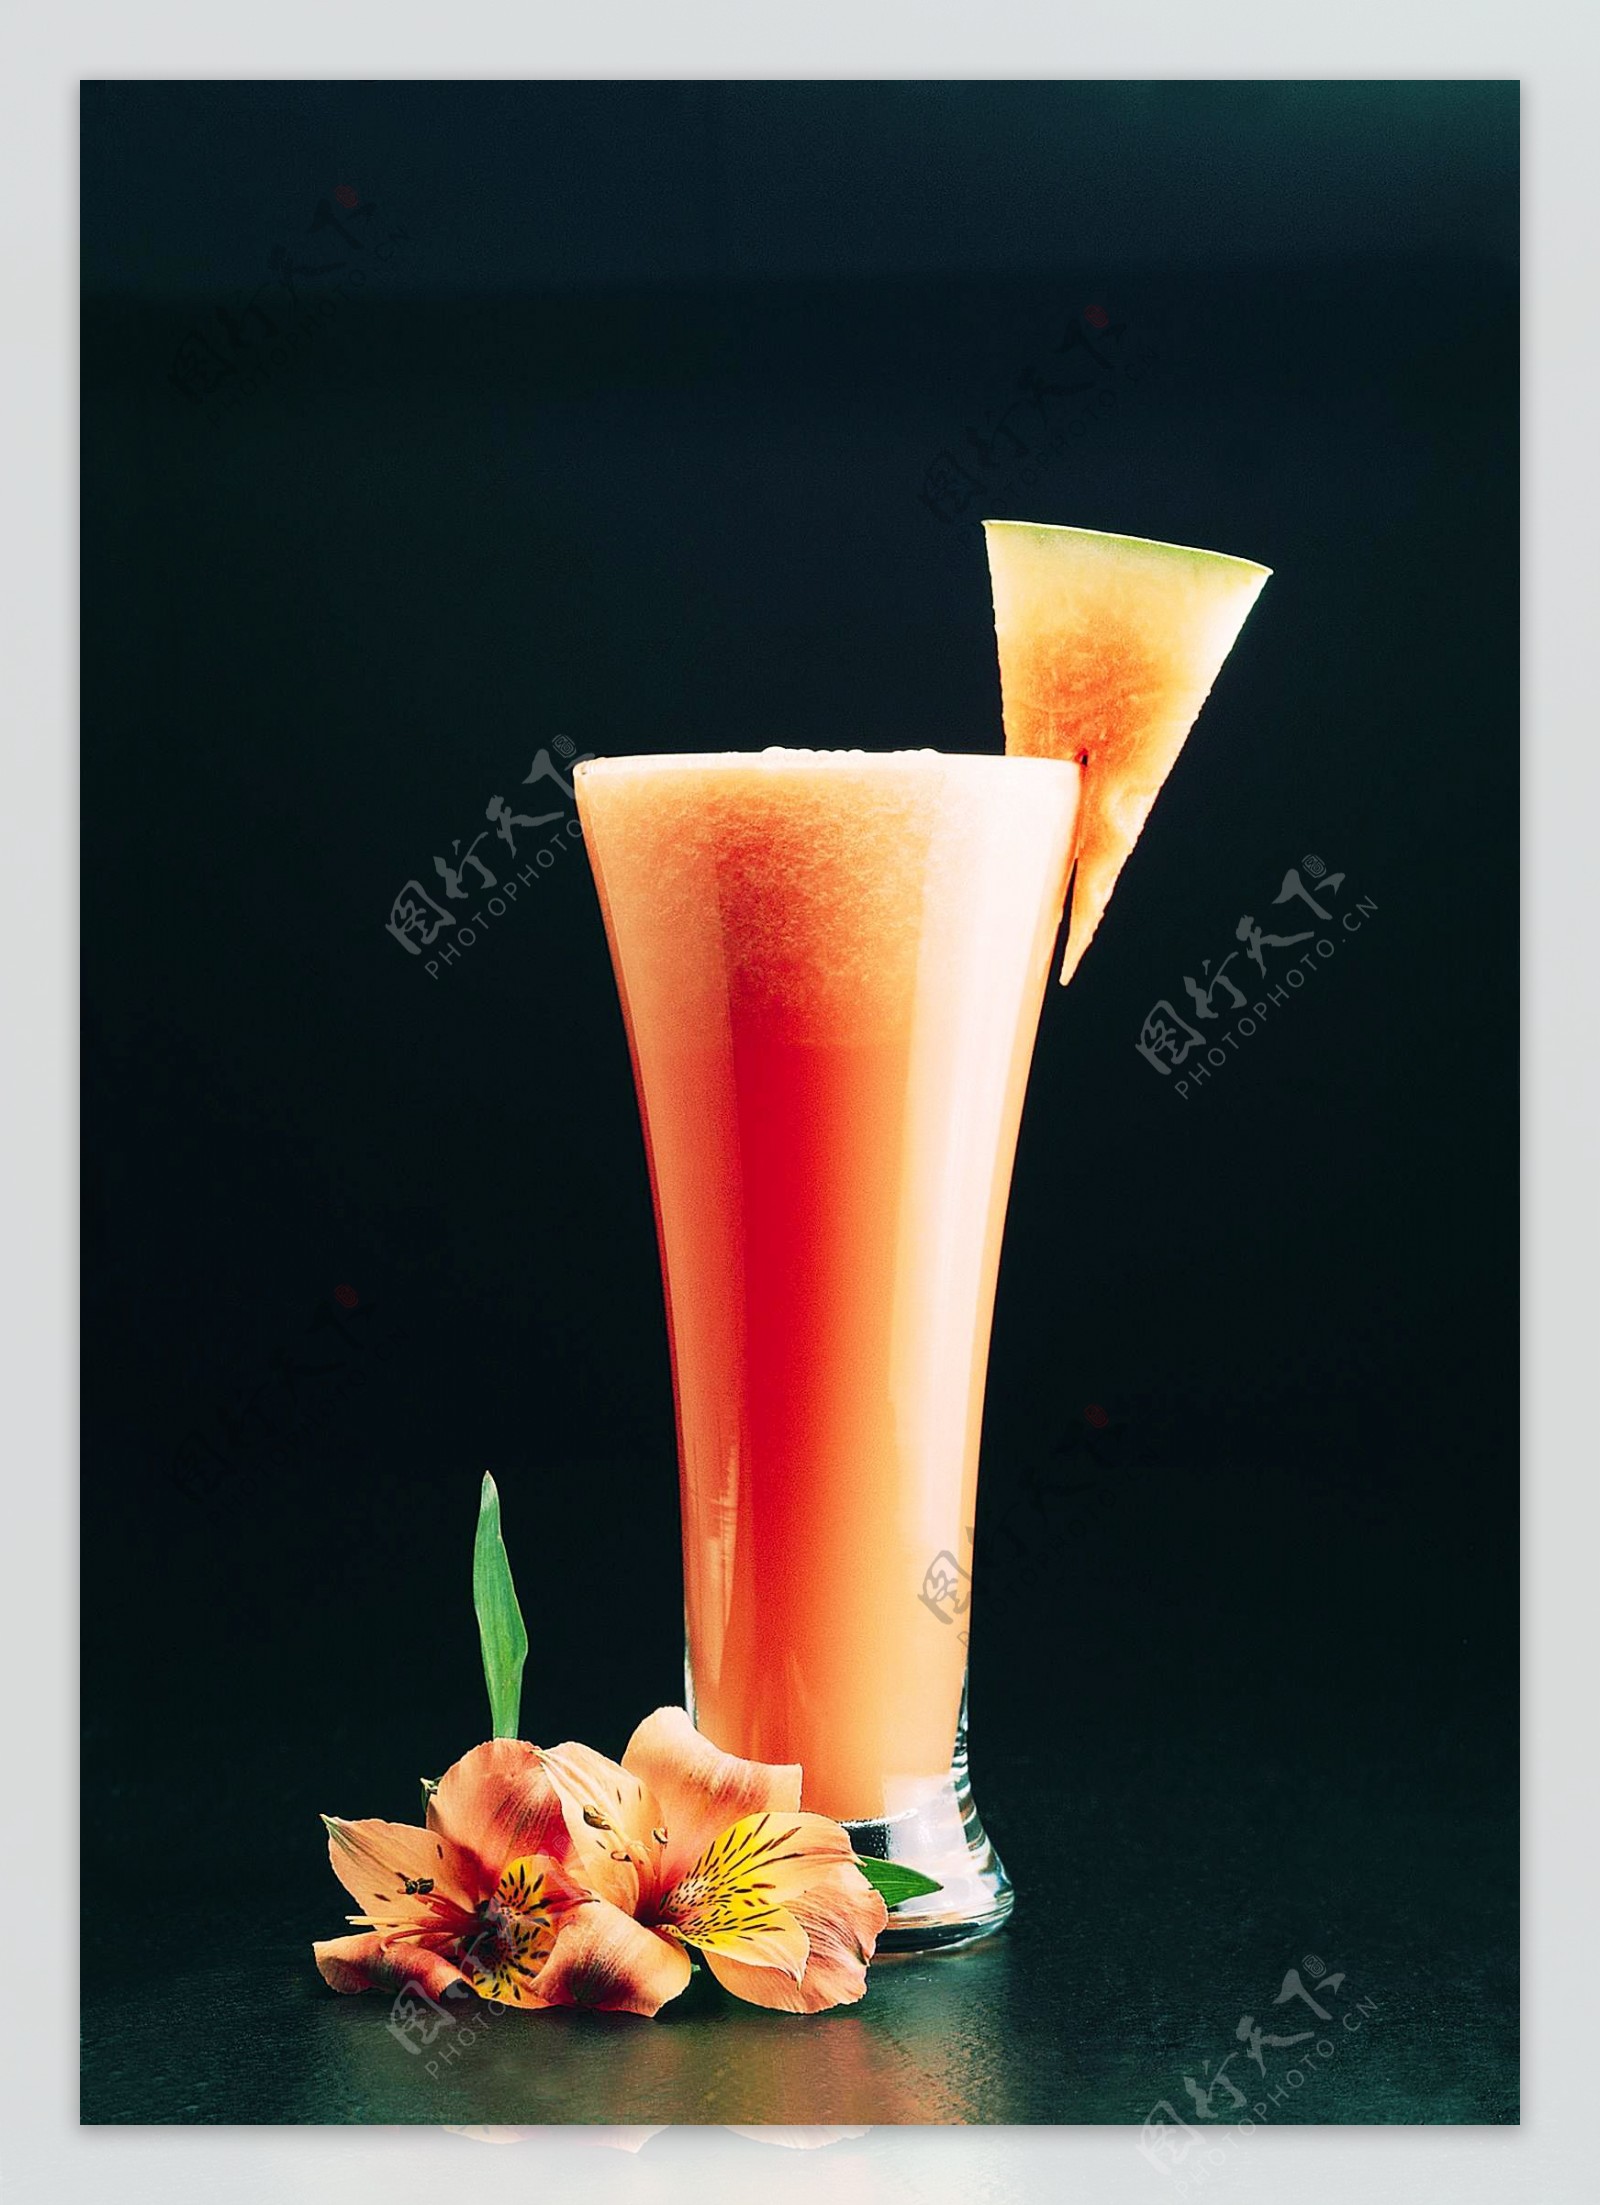 西瓜汁图片